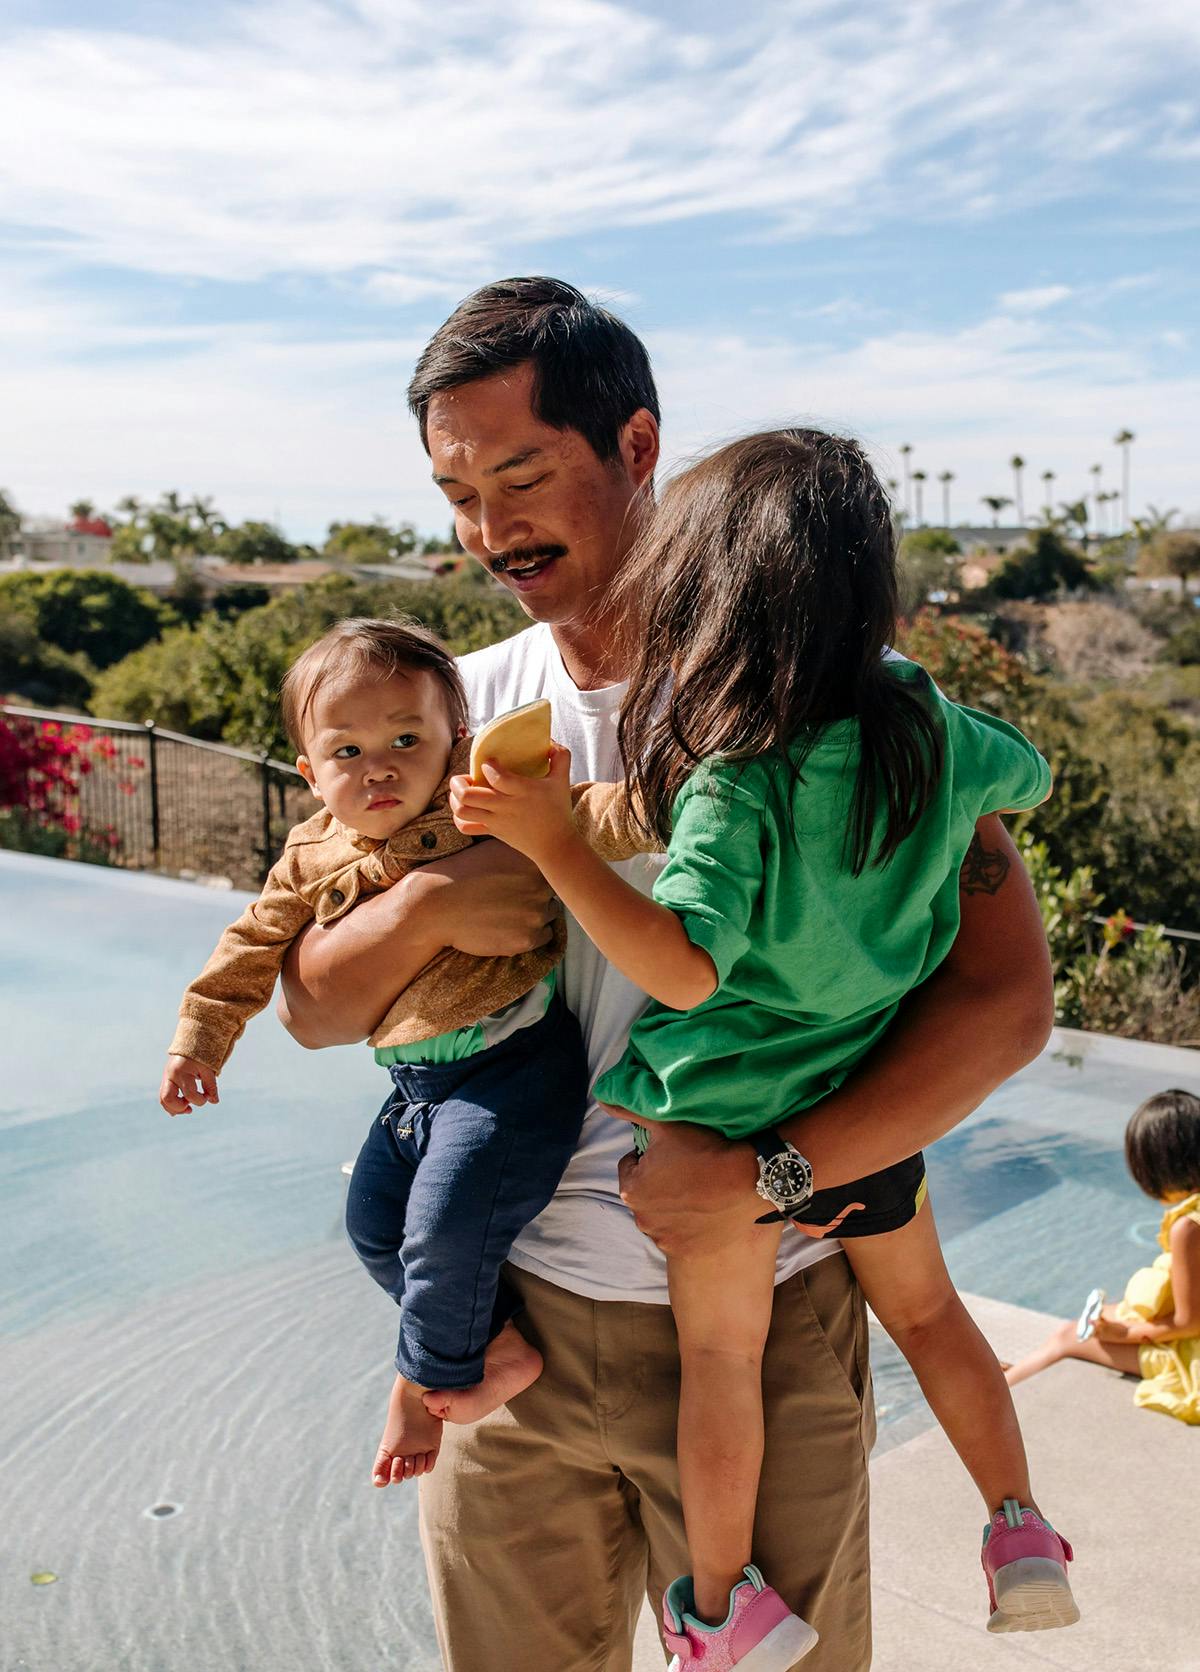 Padre asiático de unos cuarenta años con sus dos hijos pequeños en brazos, mientras camina junto a una piscina y sonríe